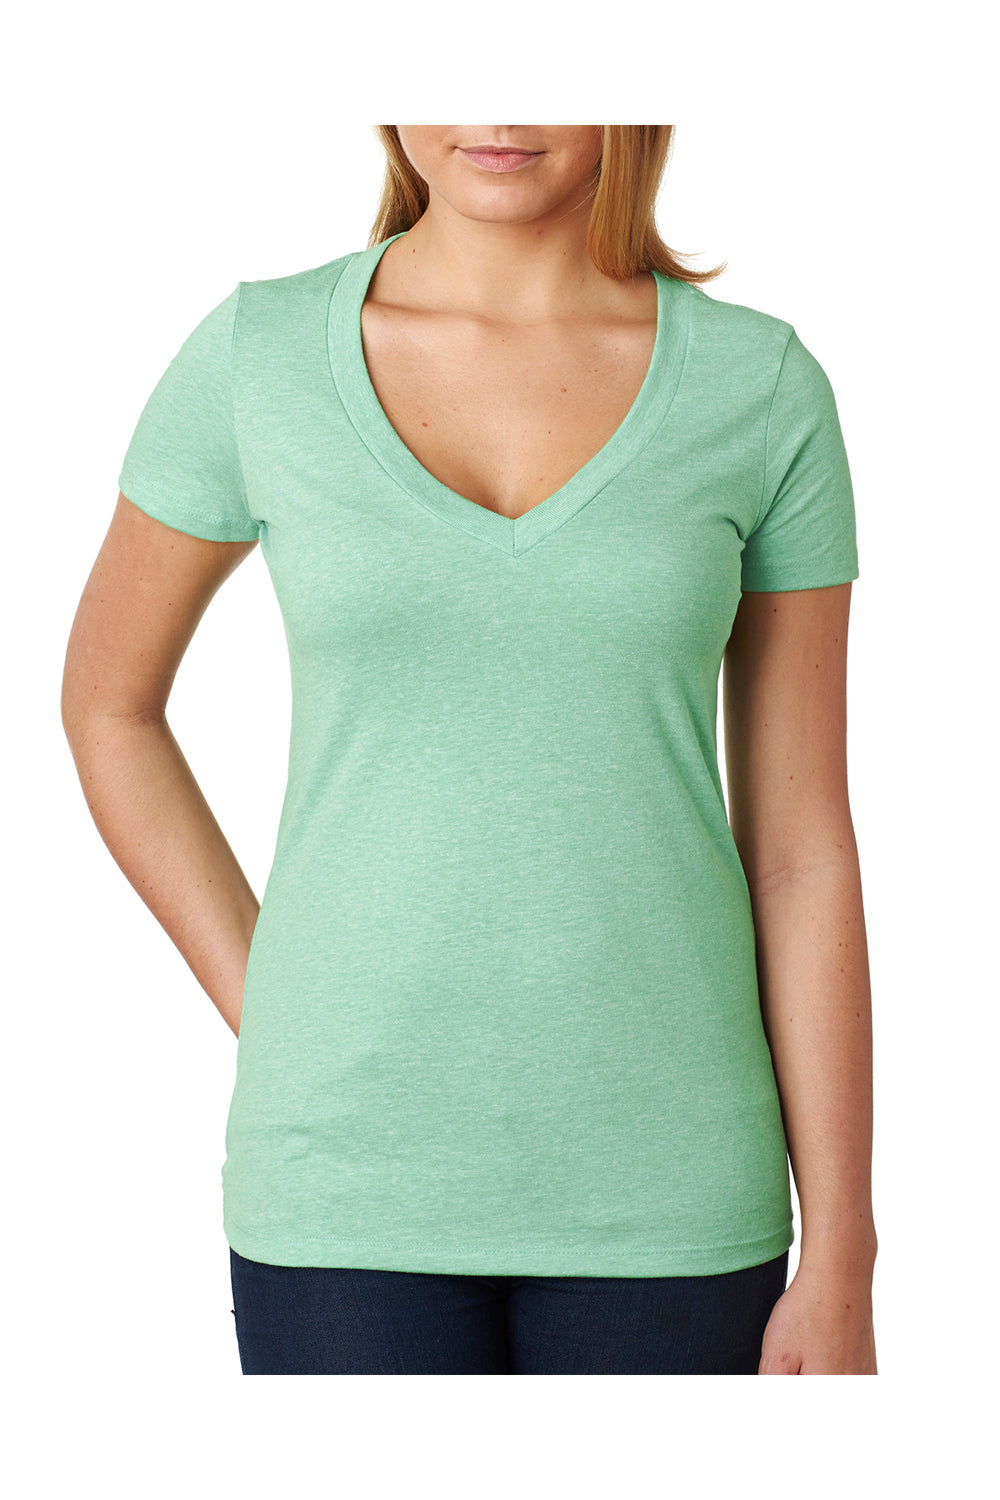 Next Level 6640 Womens CVC Jersey Short Sleeve V-Neck T-Shirt Mint Green Front